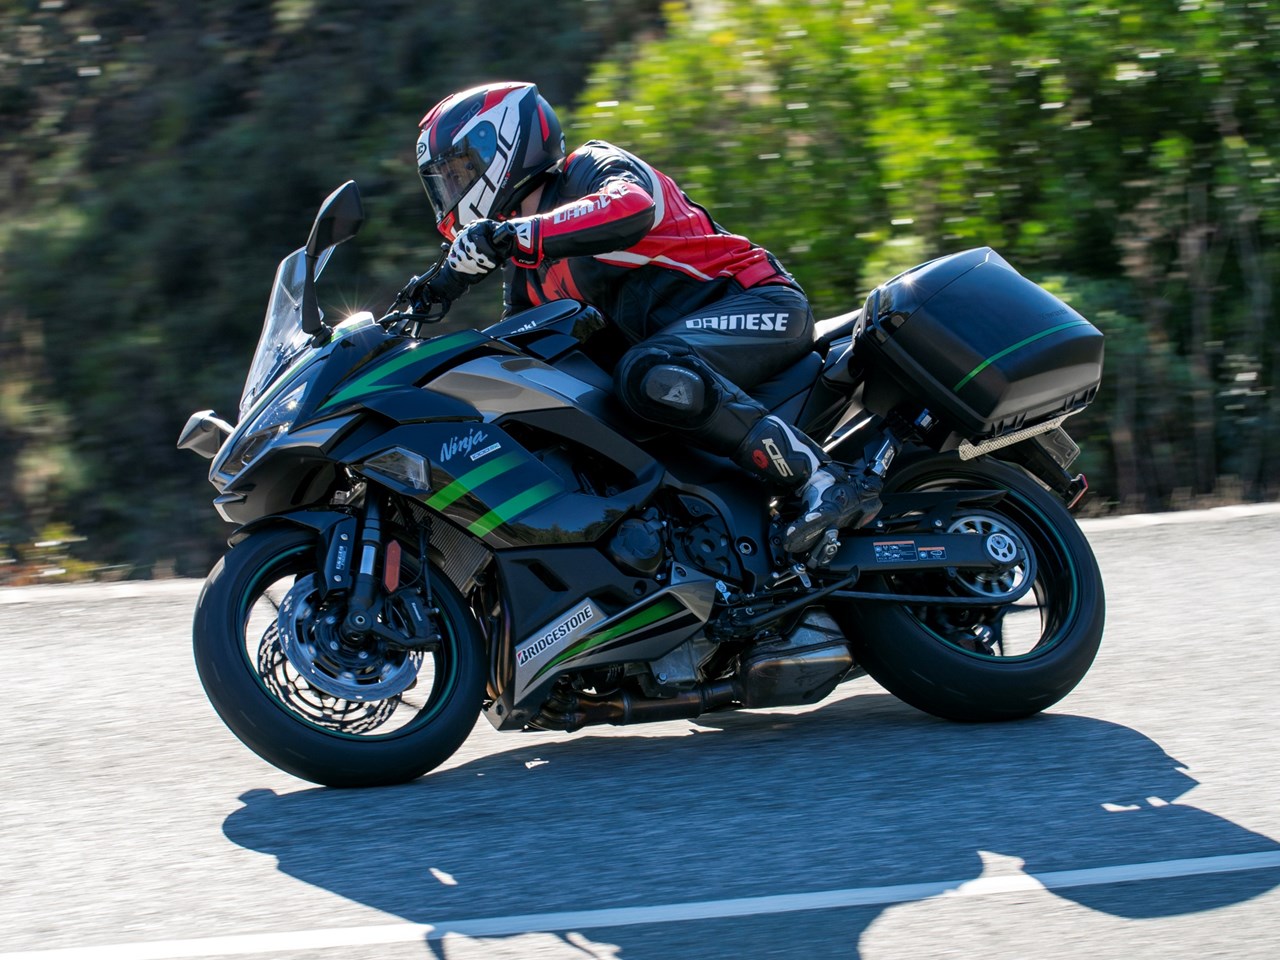 2020 Kawasaki Ninja 1000 SX First Ride Review